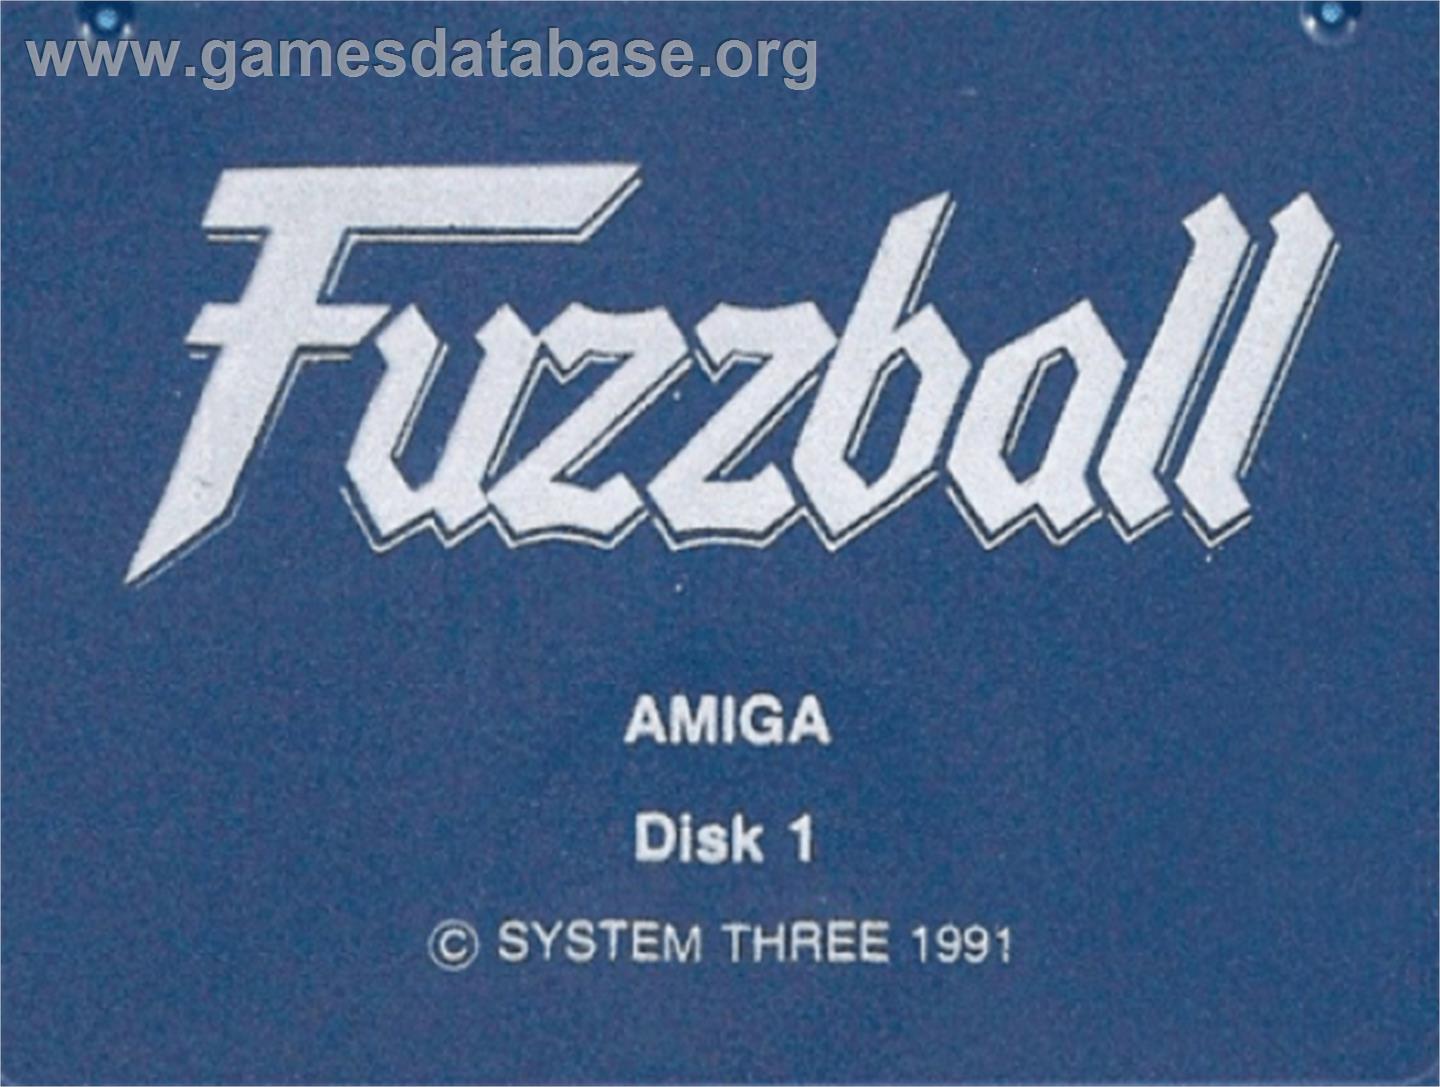 Fuzzball - Commodore Amiga - Artwork - Cartridge Top